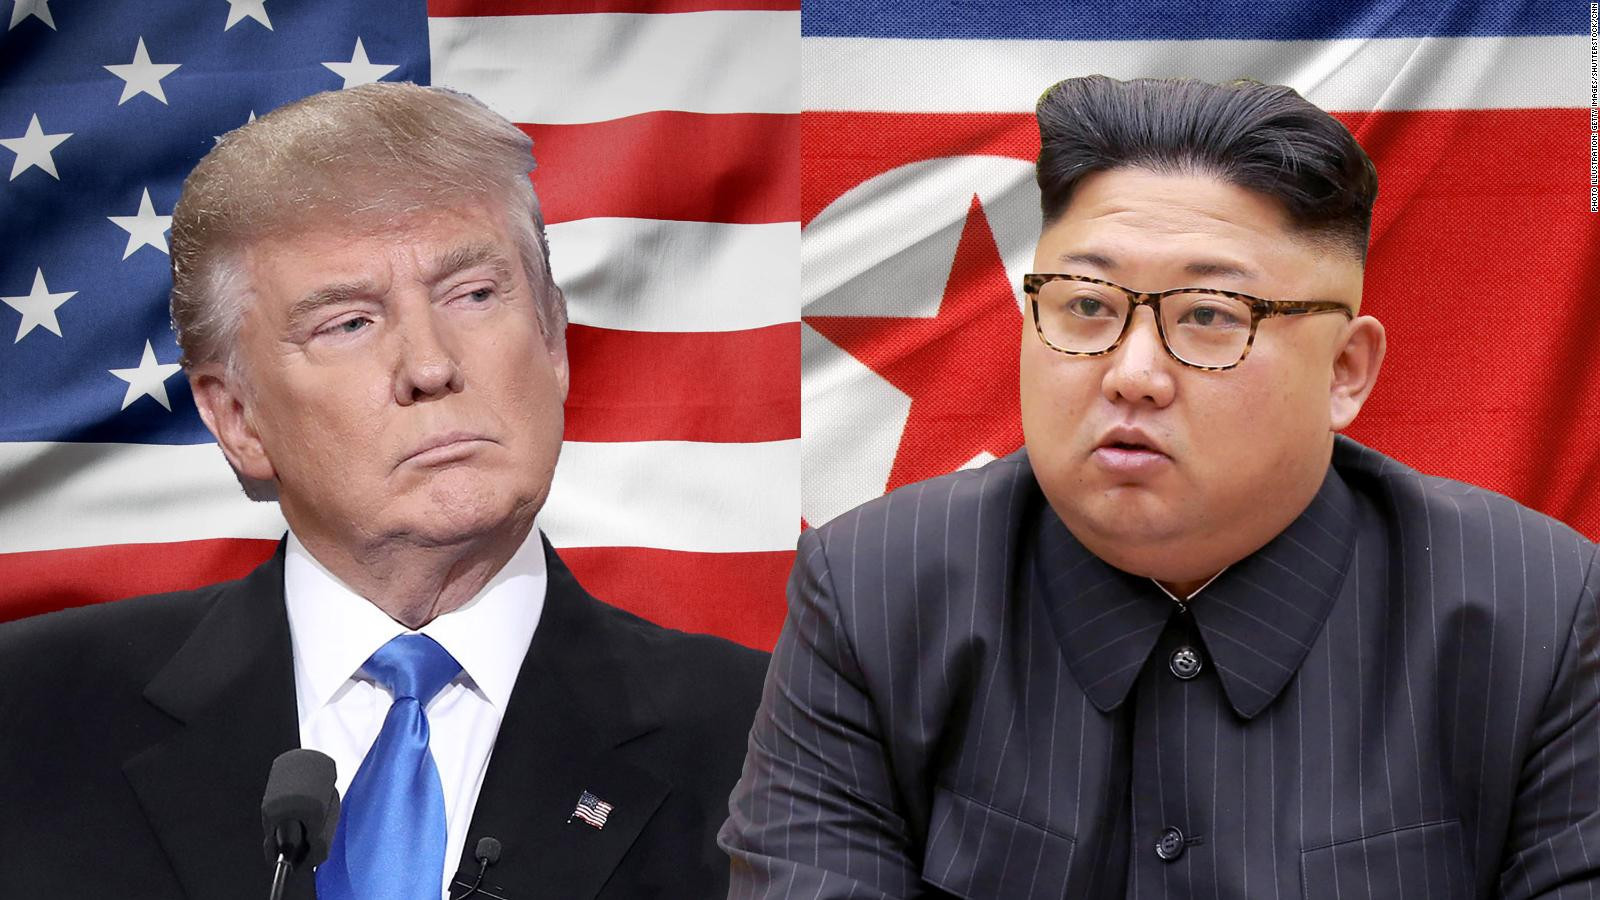 Cuộc gặp thượng đỉnh lịch sử sắp tới giữa nhà lãnh đạo Triều Tiên Kim Jong-un và Tổng thống Mỹ Donald Trump có ý nghĩa quan trọng với Trung Quốc. Ảnh: Getty